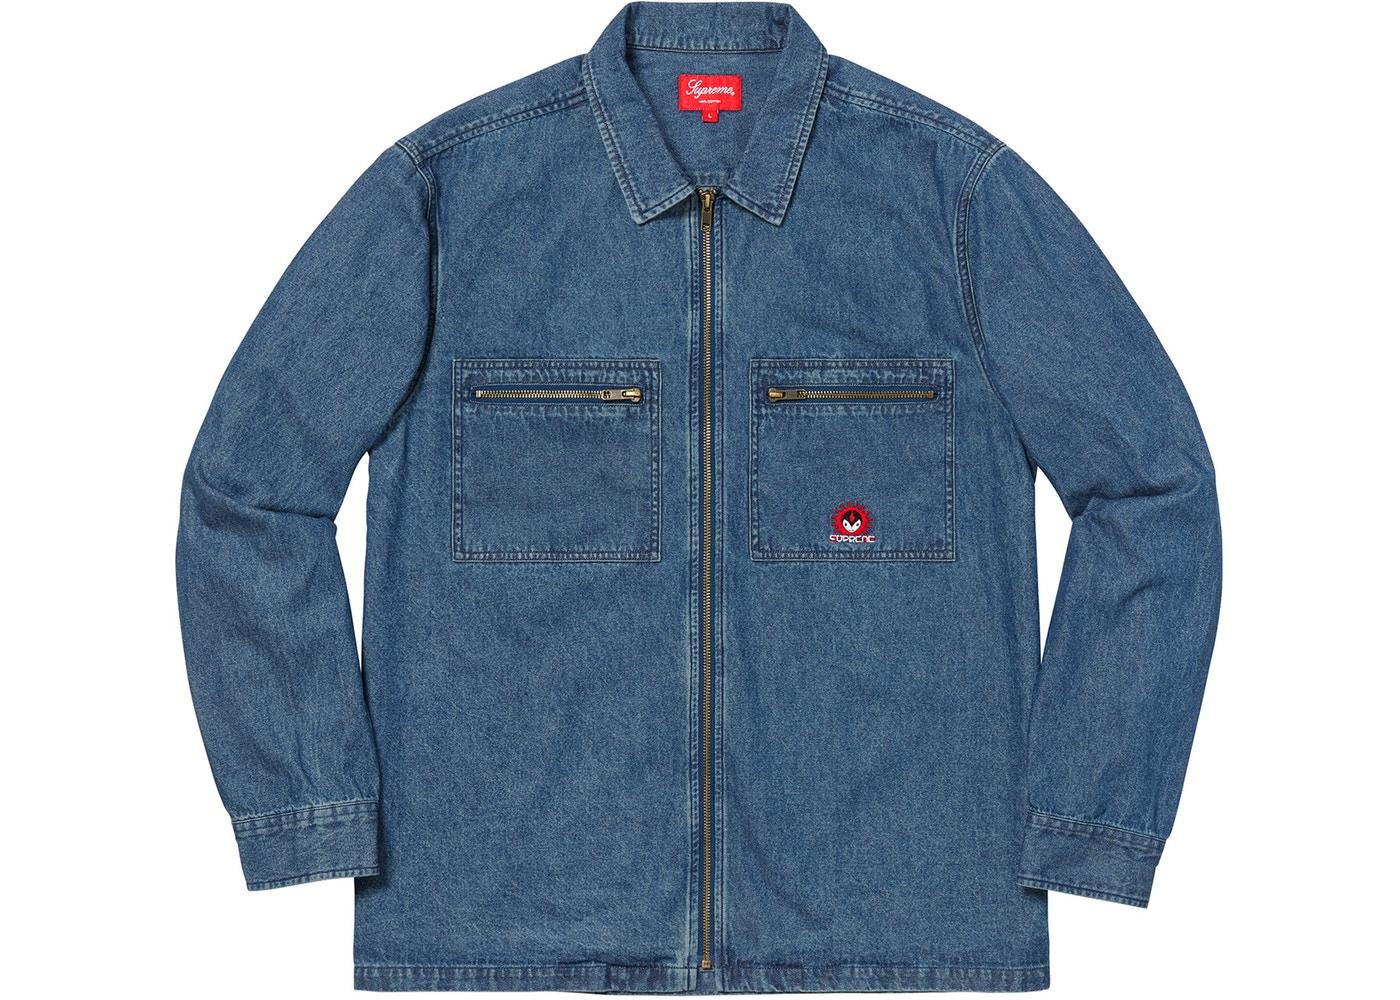 Free People | Jackets & Coats | Free People Your Dads Frayed Zip Up Denim  Shirt Jacket Size Xs New | Poshmark